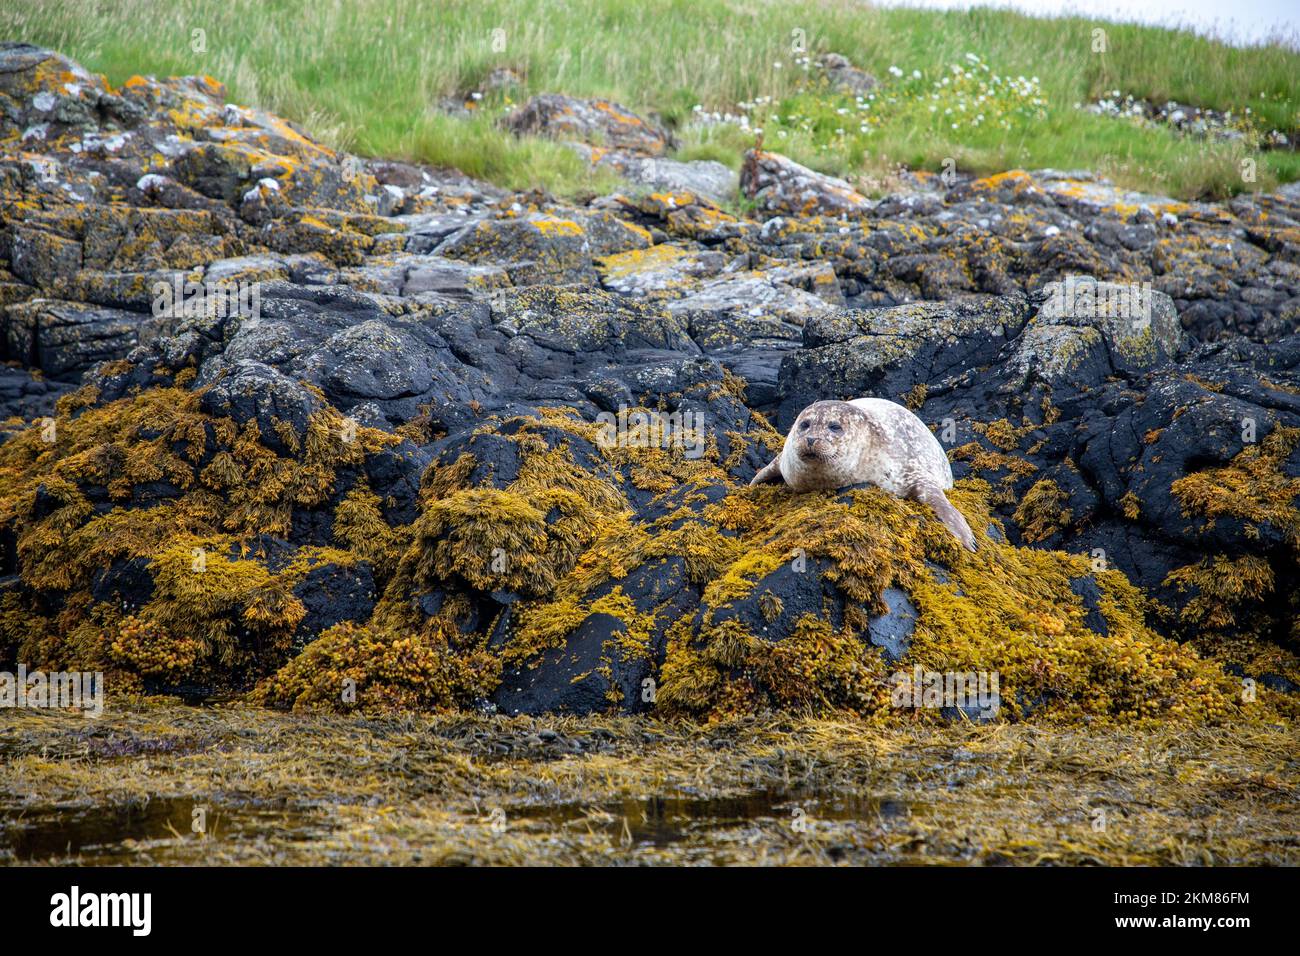 Eine wilde Robbe (Phoca vitulina) auf einem Felsen am Ufer eines Sees in Schottland Stockfoto